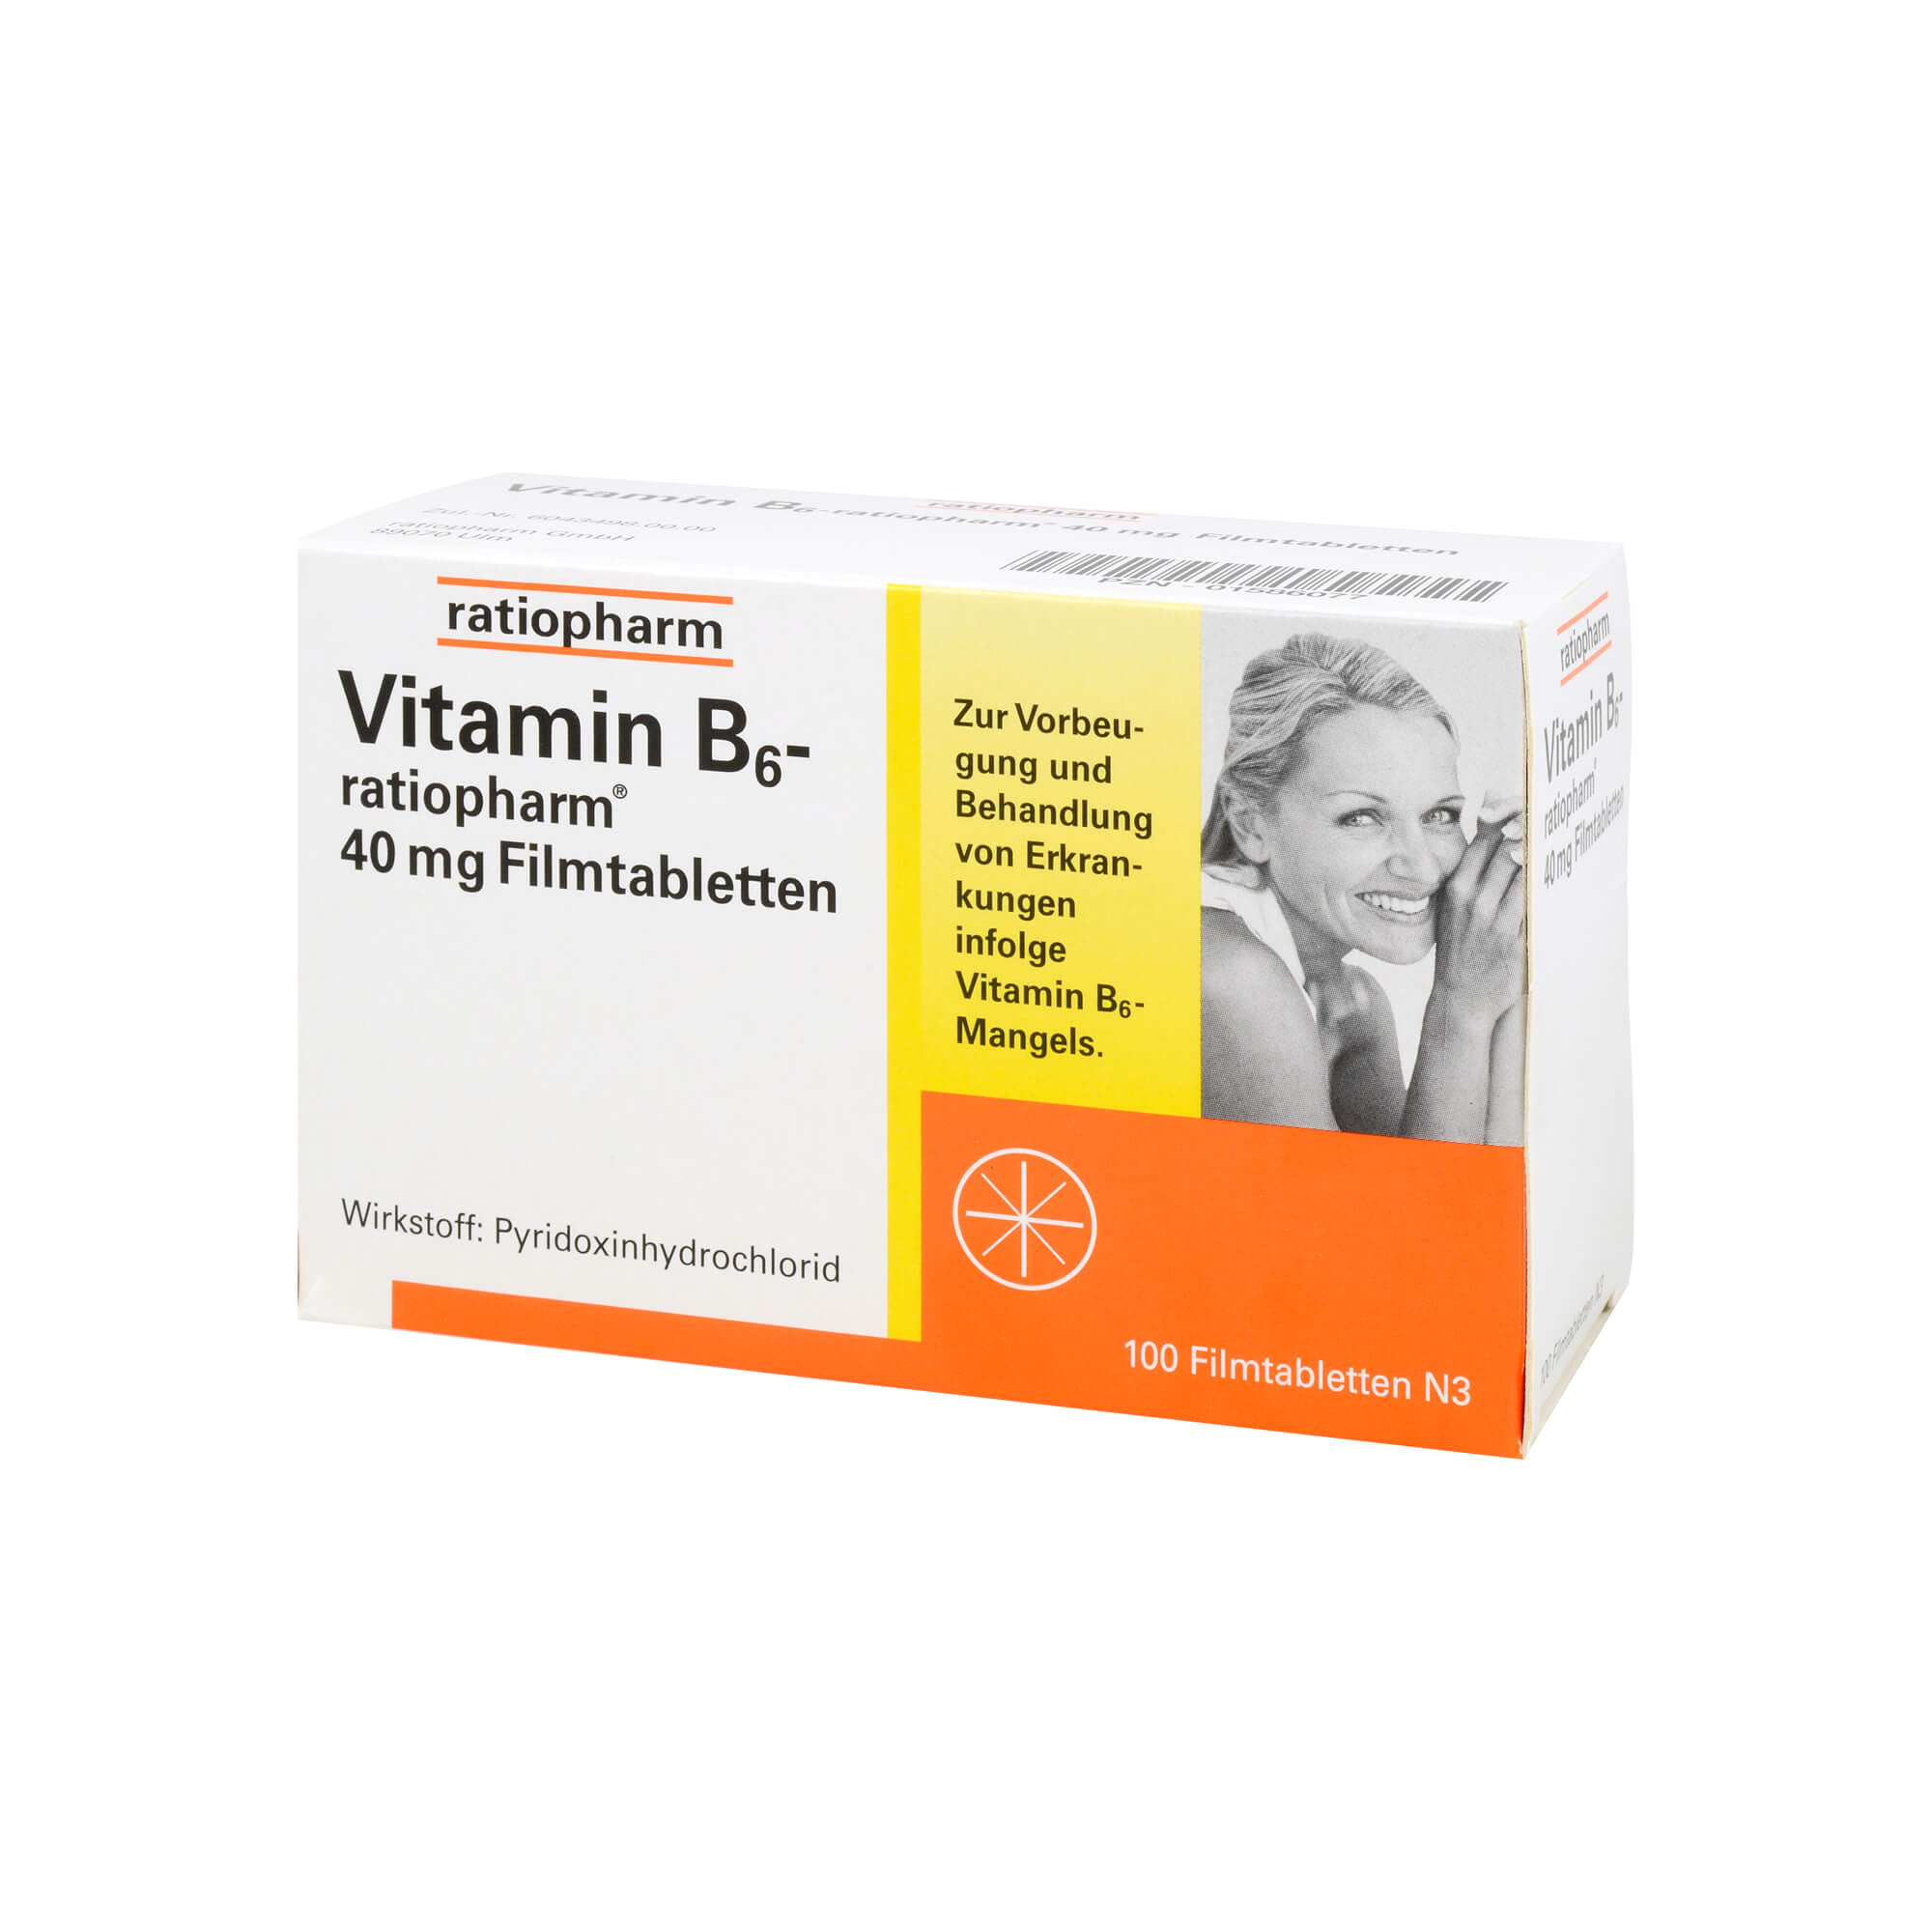 Zur Vorbeugung einer peripheren Neuropathie (Nervenentzündung) infolge eines durch Arzneimitteleinnahme verursachten Vitamin-B6-Mangels.